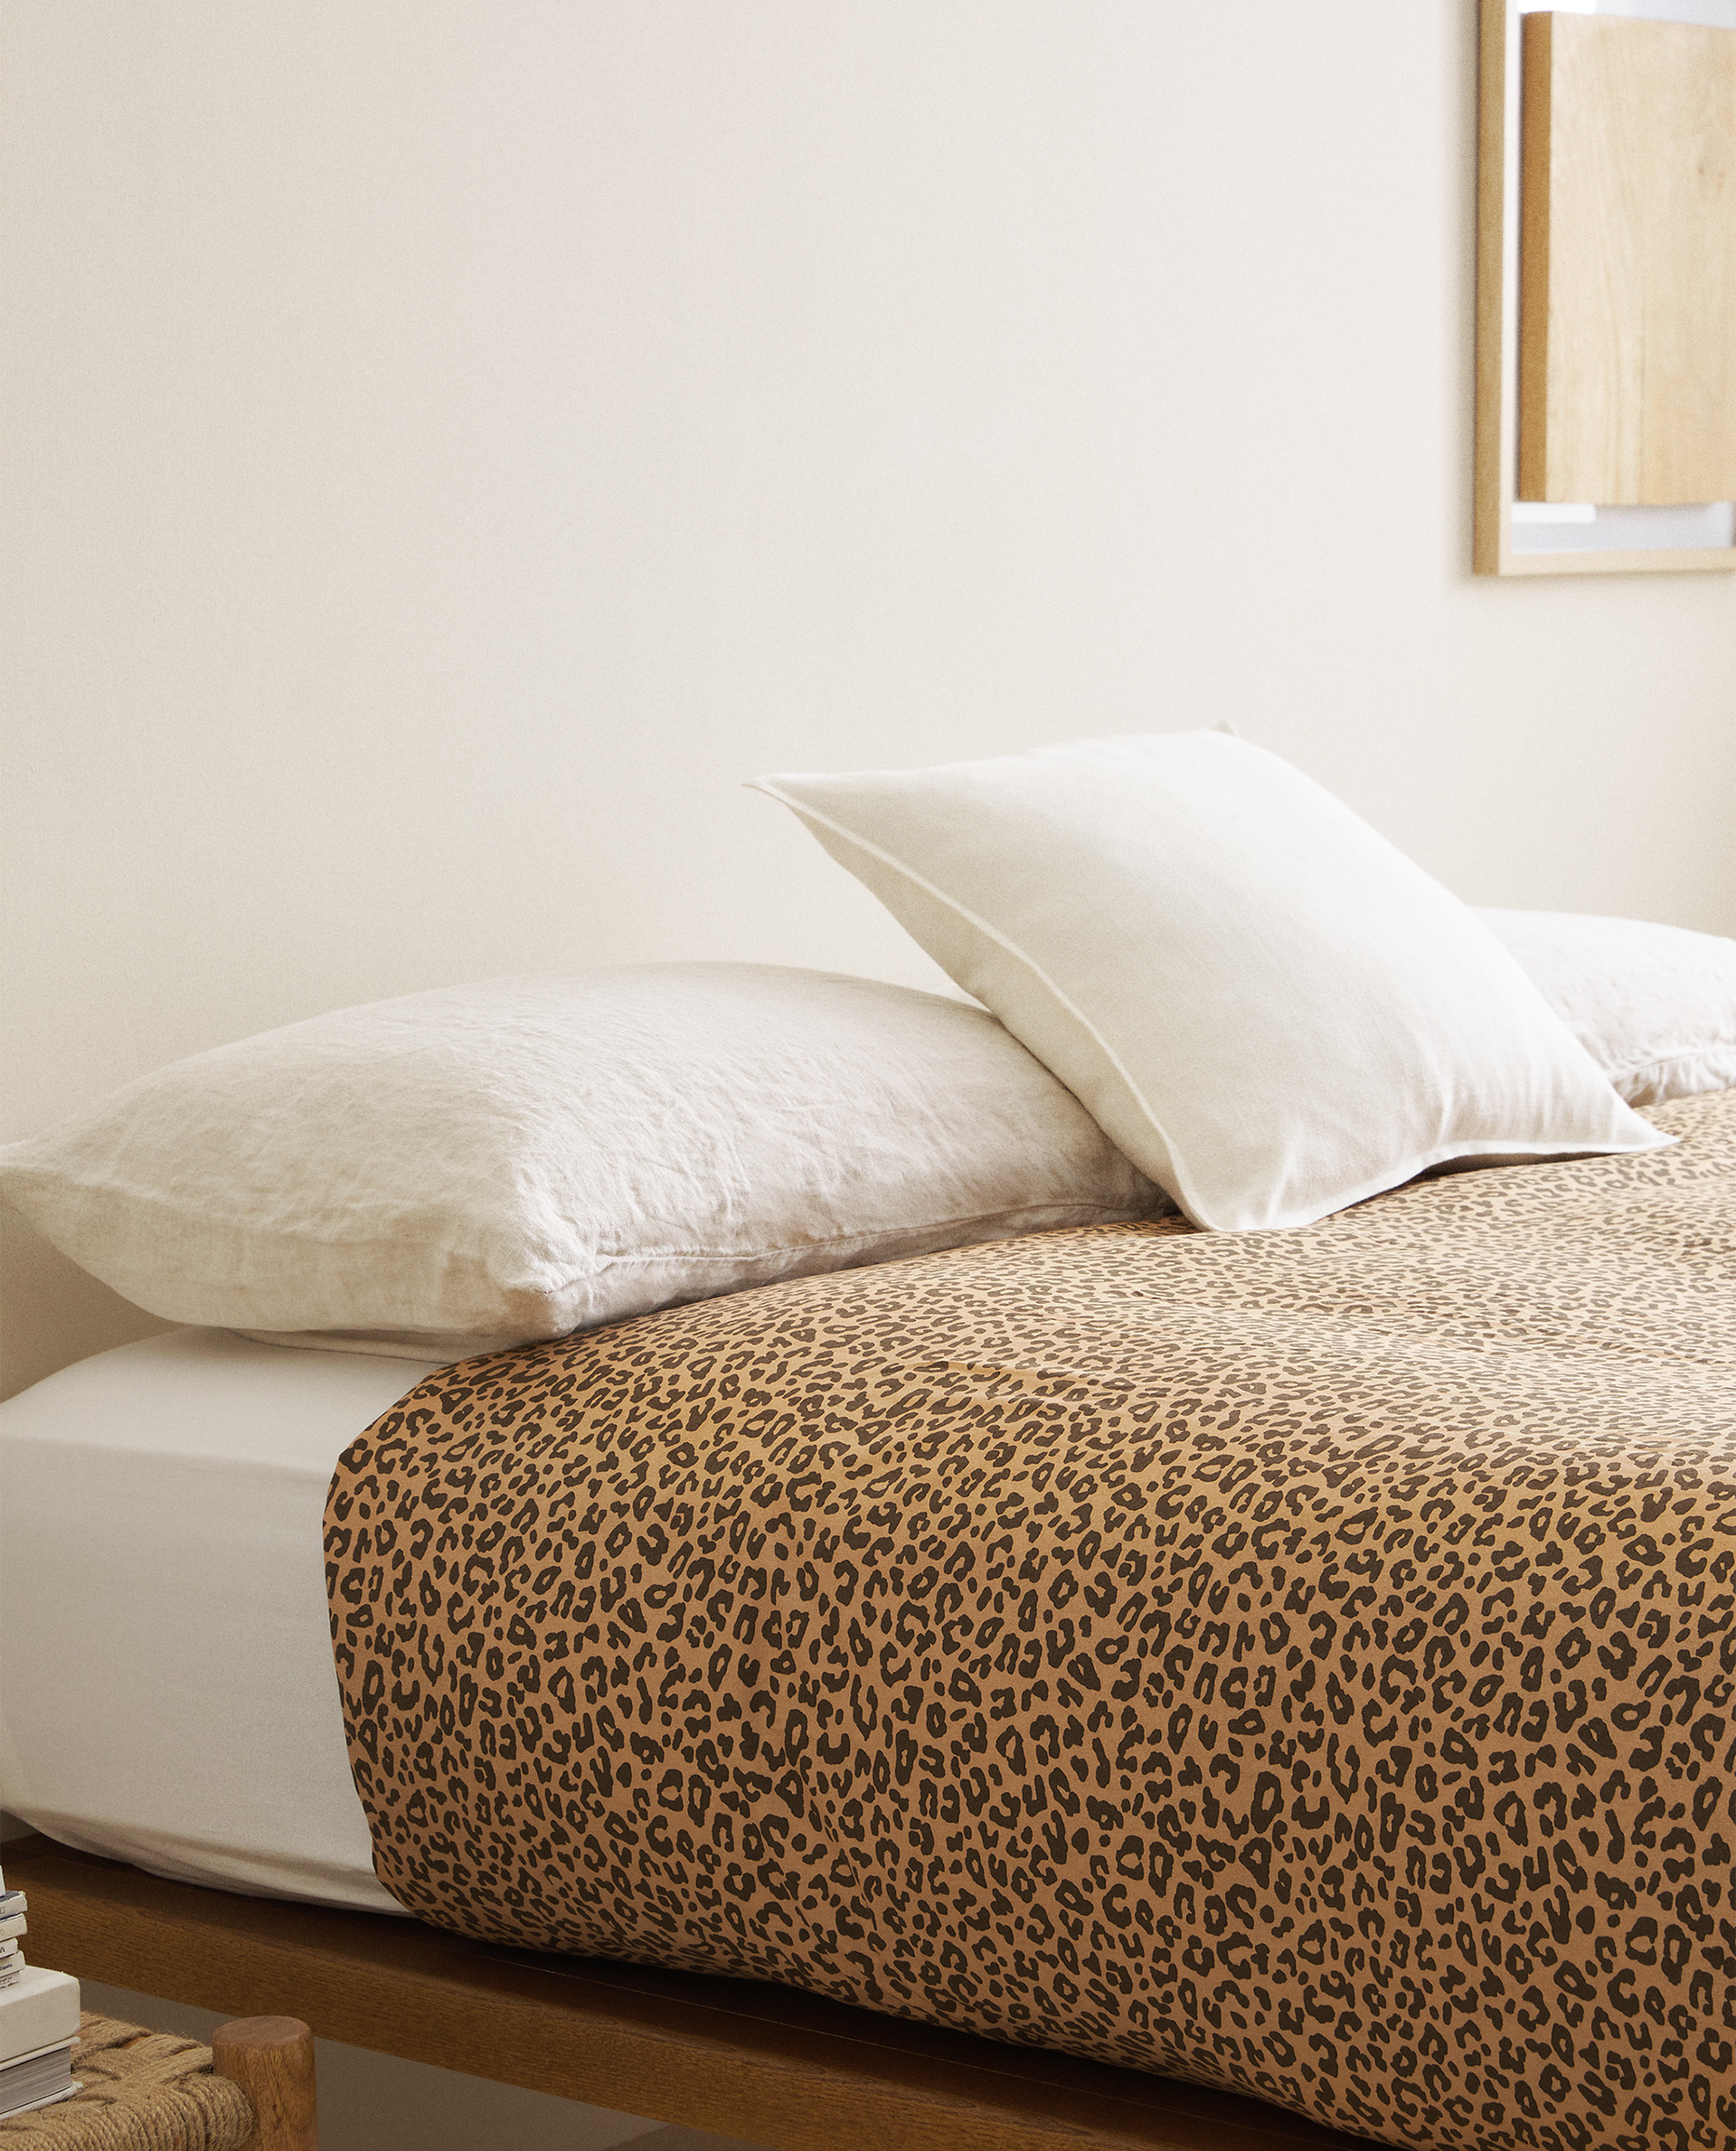 Leopard Print Duvet Cover Duvet Covers Bed Linen Bedroom